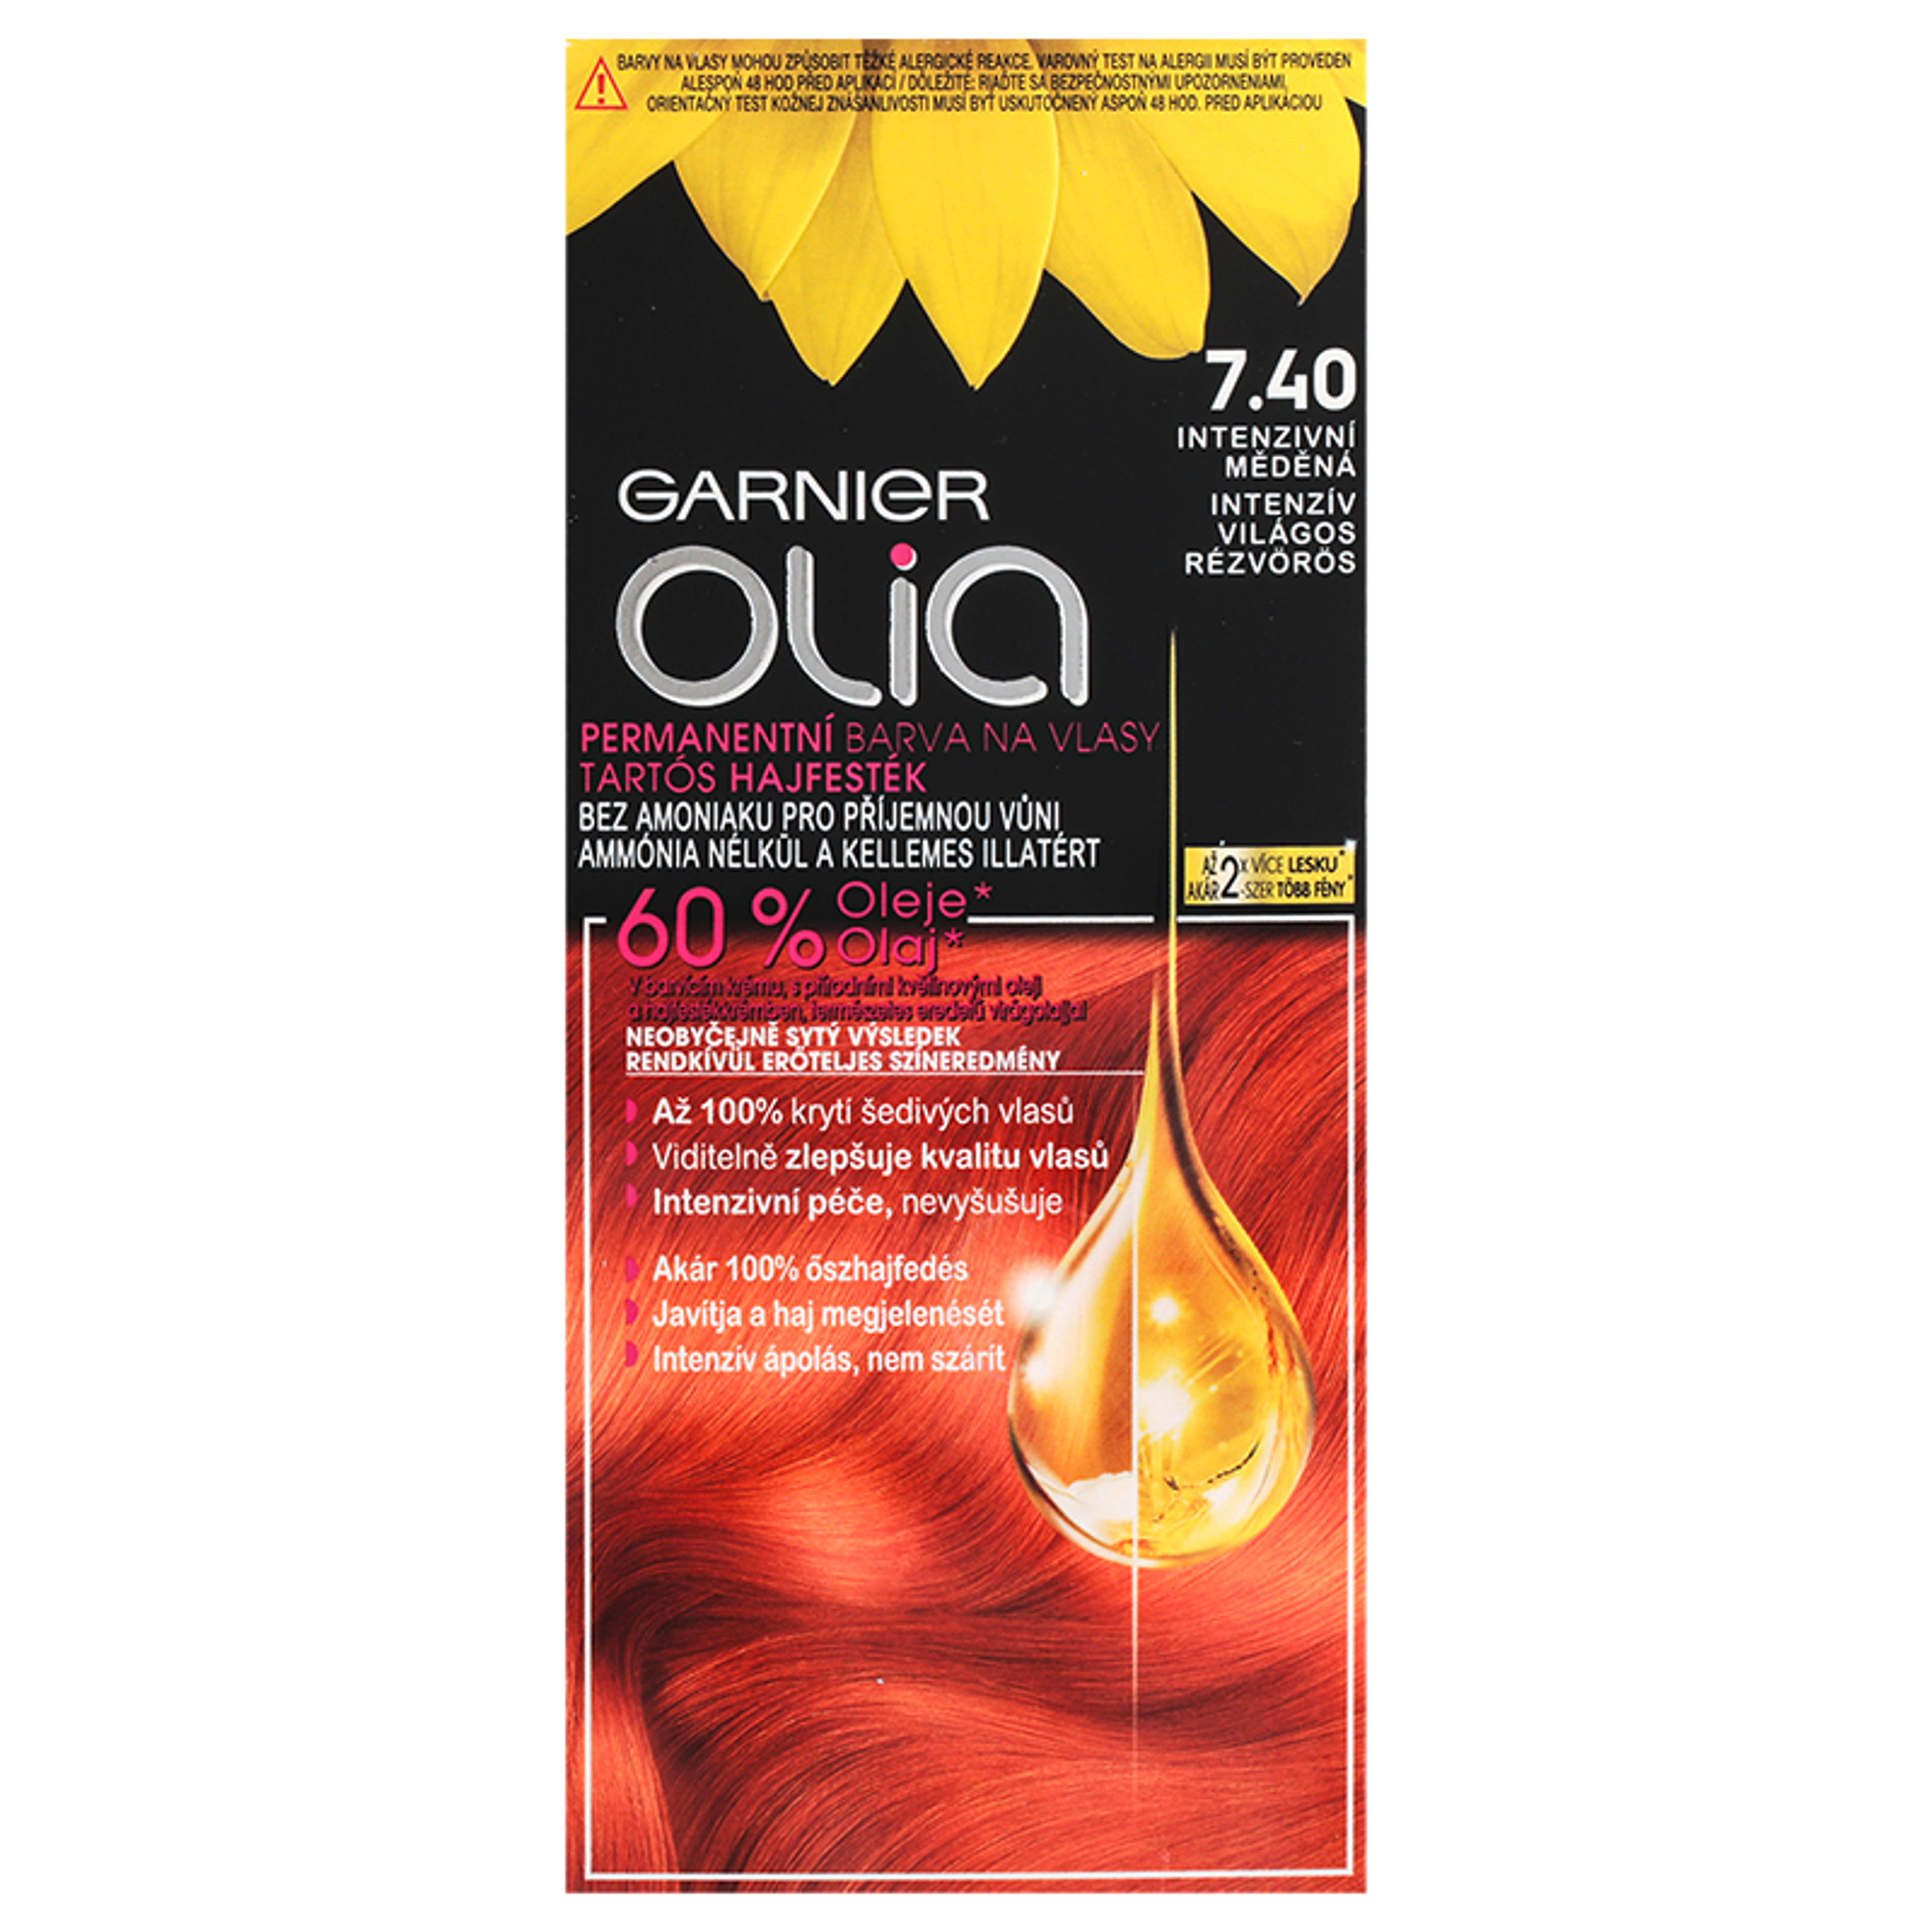 Garnier Olia tartós hajfesték 7.40 Intenzív világos rézvörös - 1 db